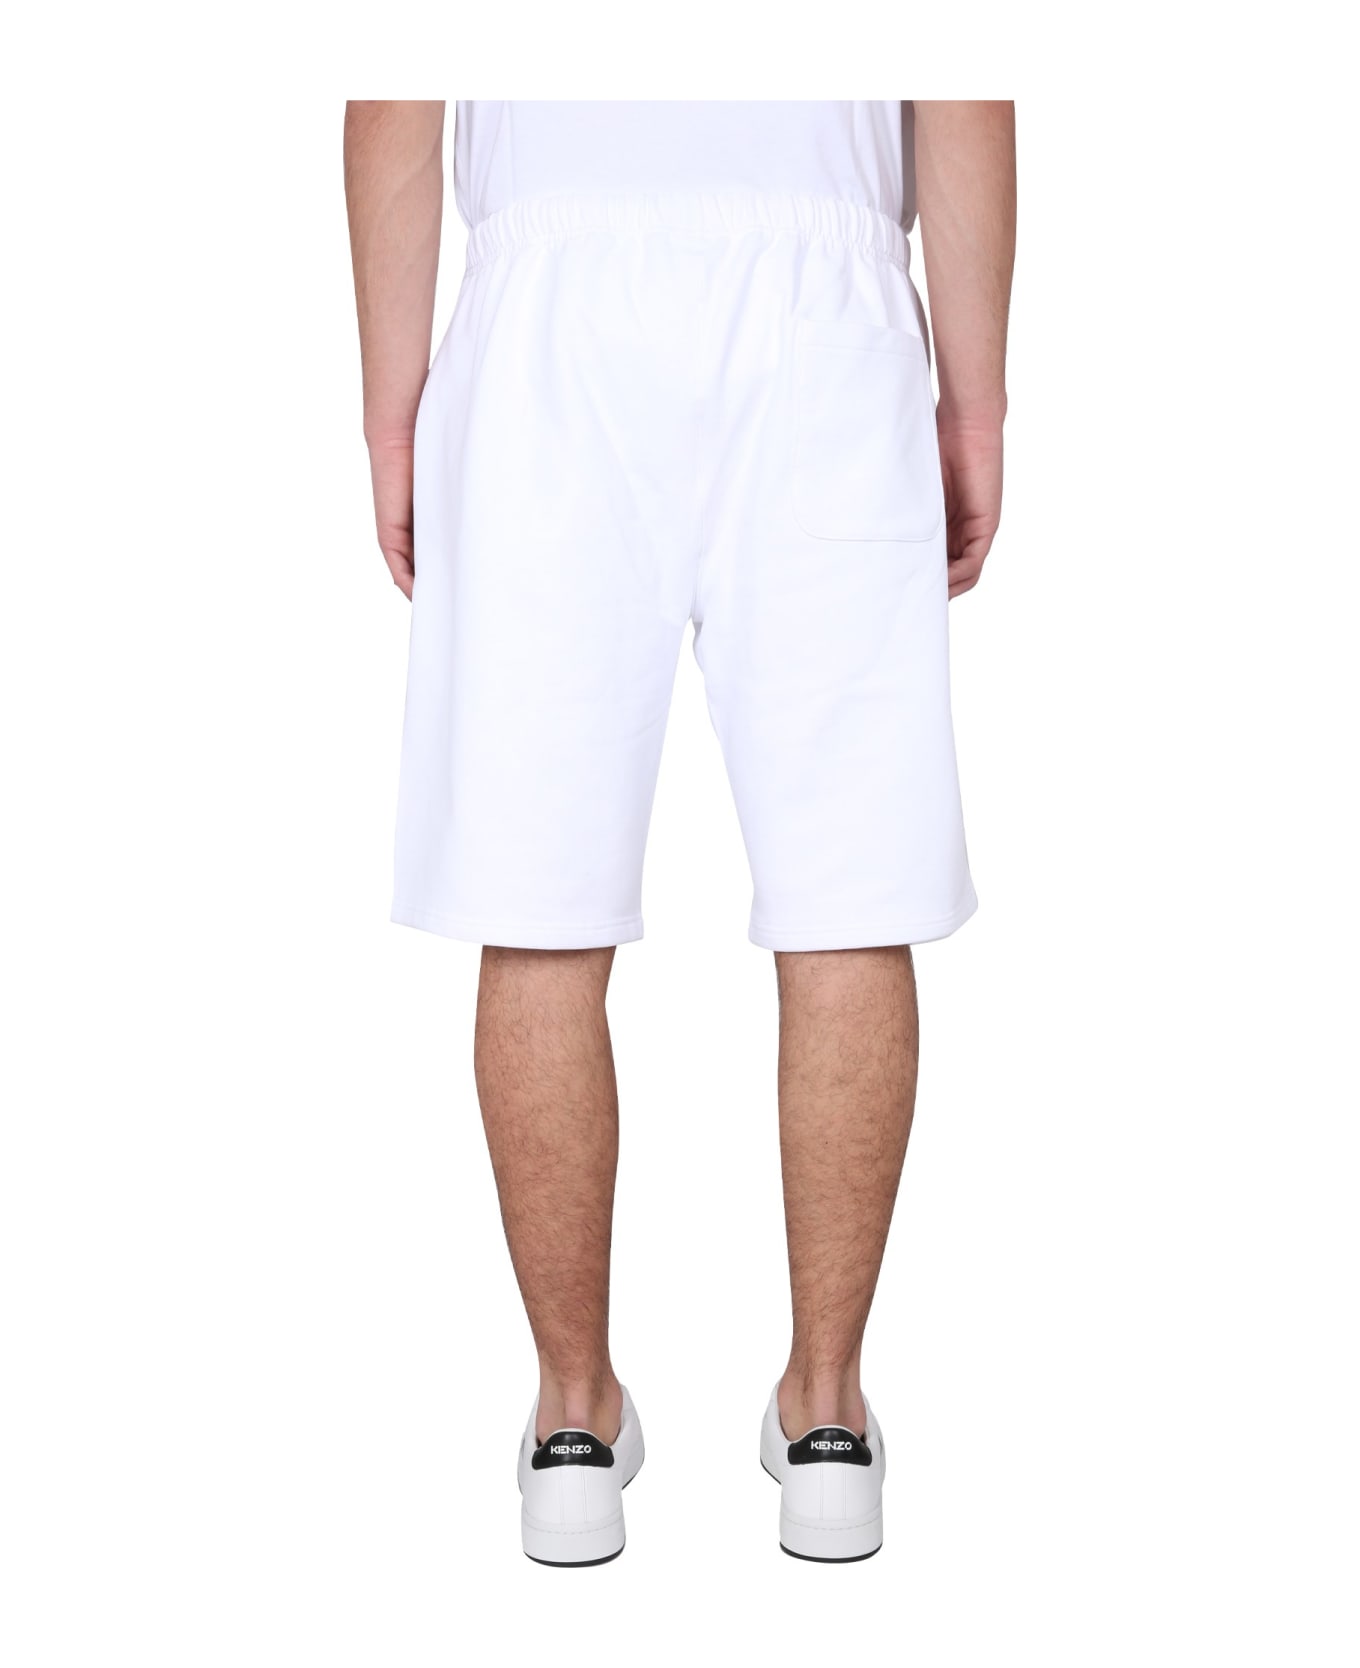 Kenzo Bermuda Shorts - Blanc ショートパンツ